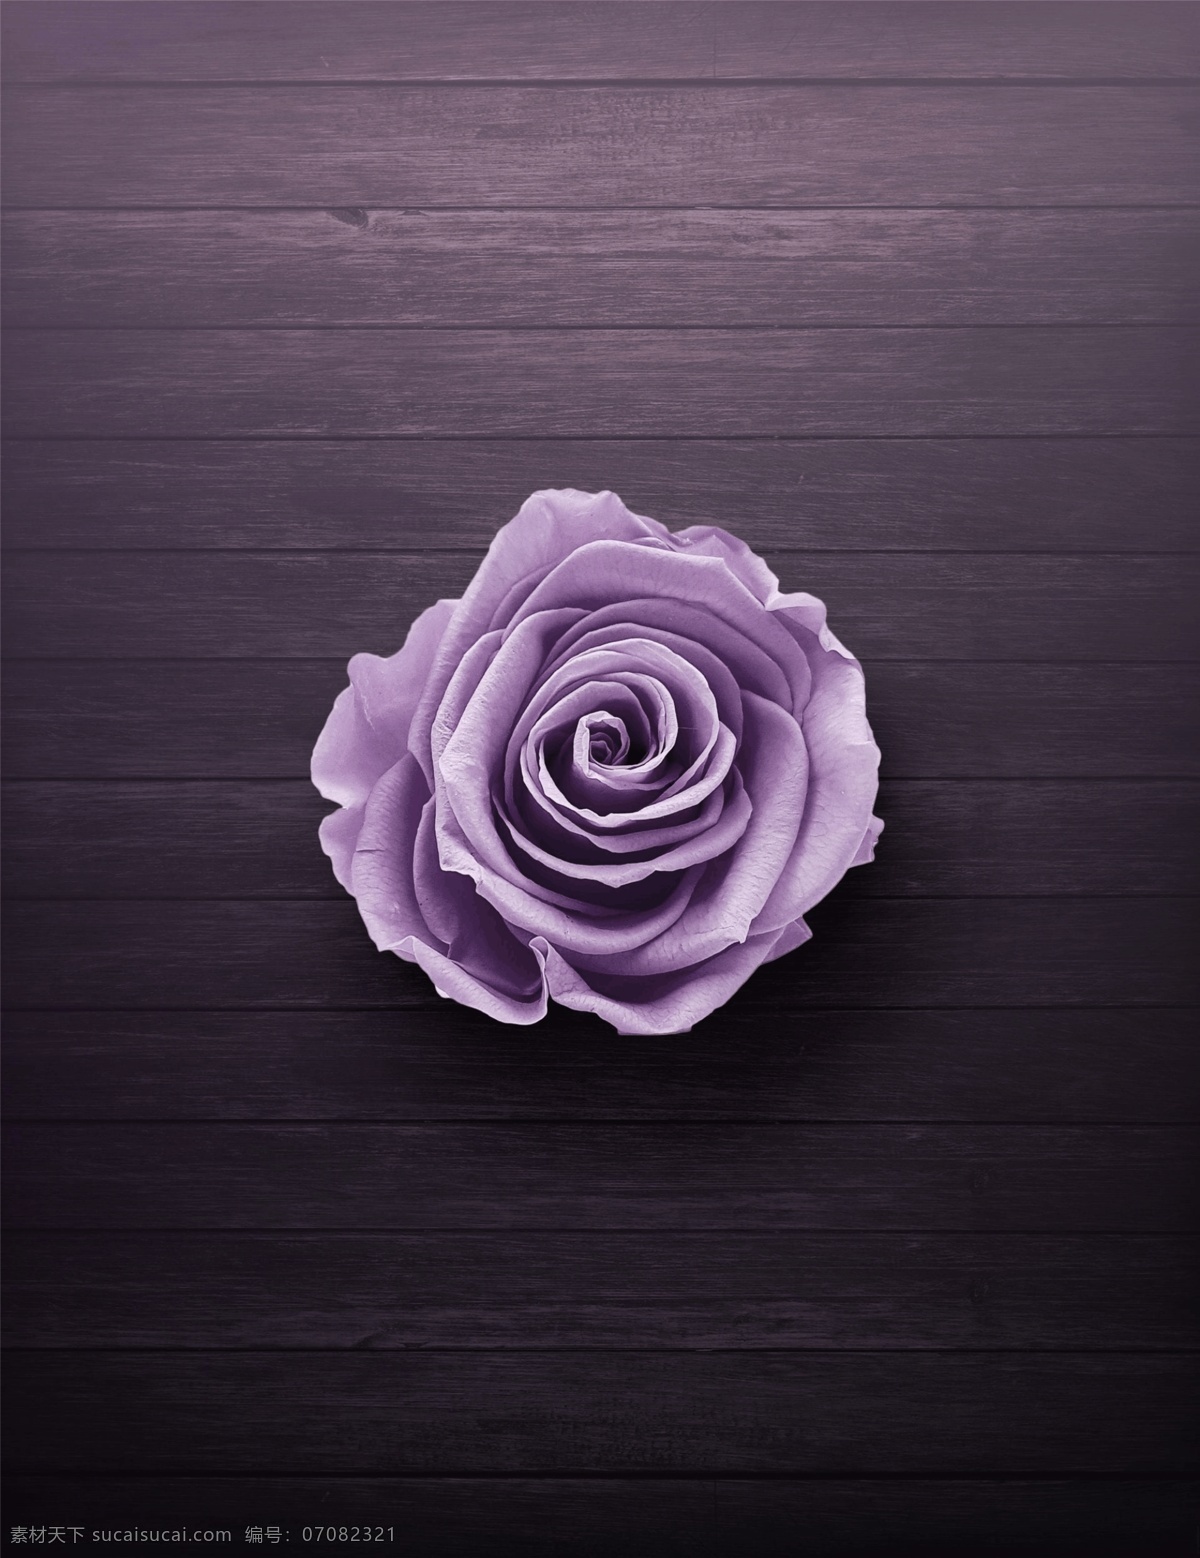 木板 上 紫色 玫瑰花 木纹 花朵 植物 花草 紫色背景 背景 创意 高清 简单 简约 大气 清新 tiff 壁纸 电脑壁纸 桌面 电脑桌面 海报 设计素材 拍摄 摆拍